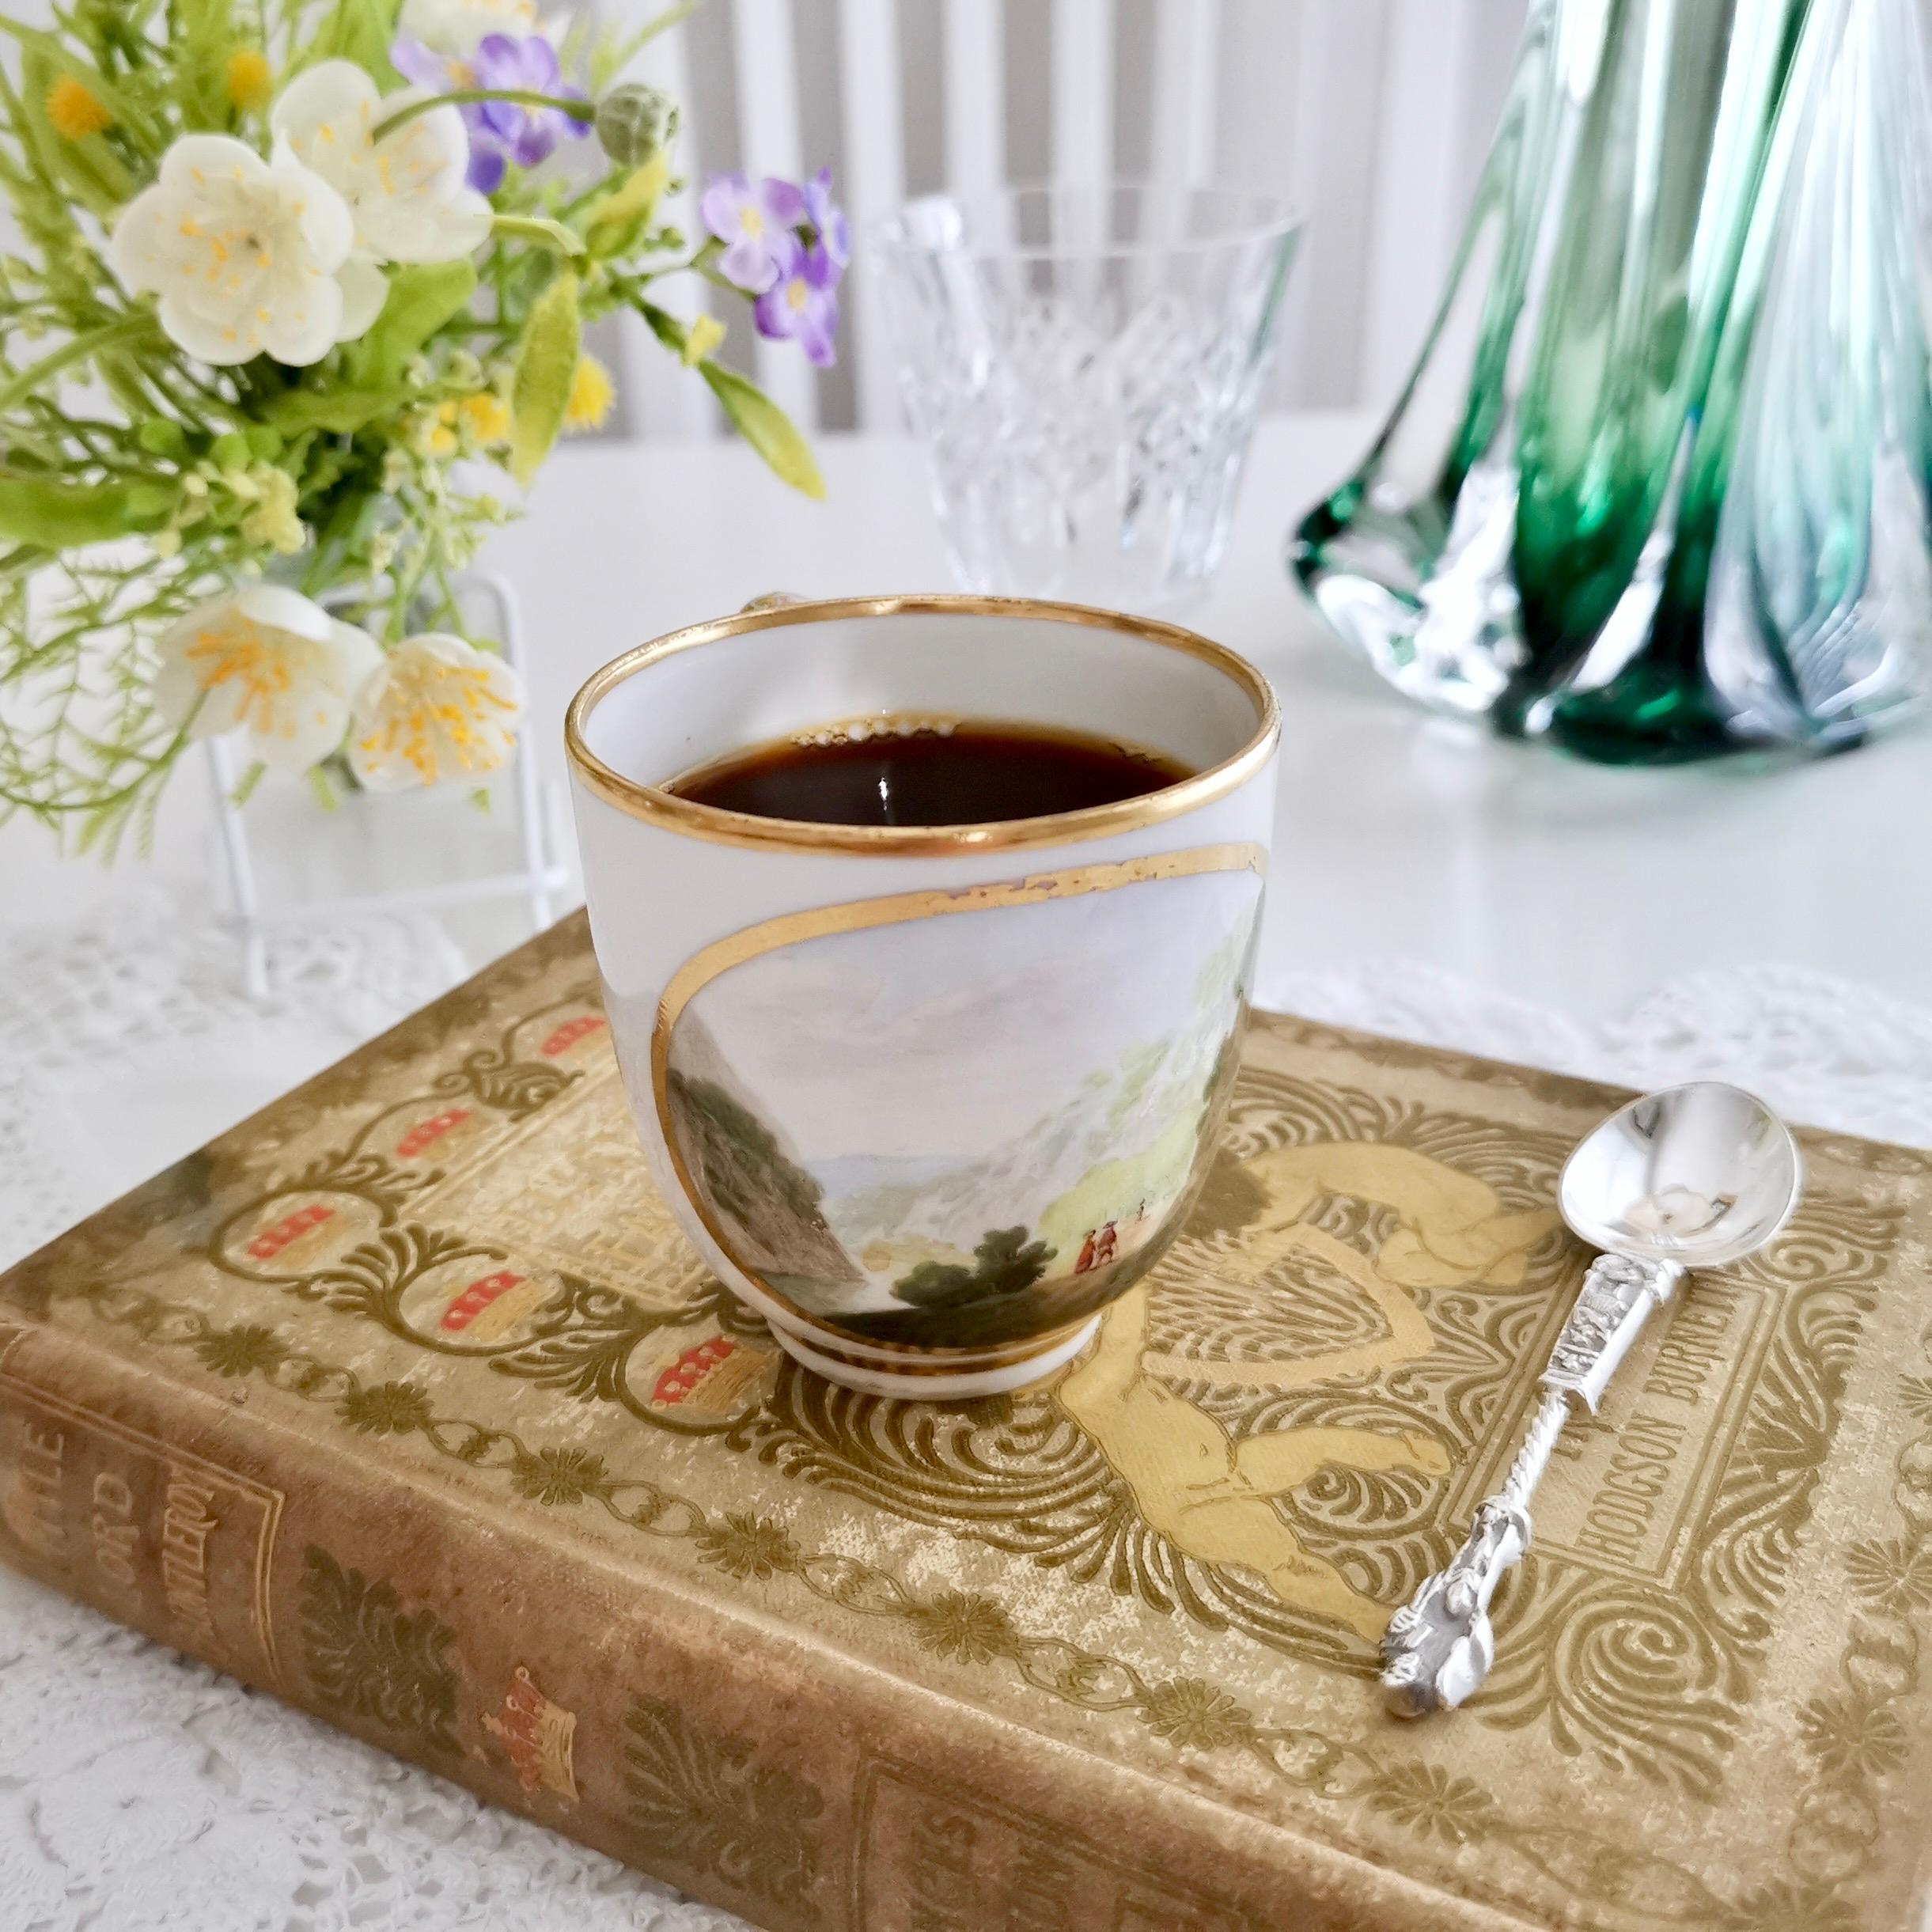 Dies ist eine sehr seltene und erstaunliche kleine verwaiste Kaffeetasse, die um 1790 in Derby hergestellt wurde. Der Becher hat einen weißen Grund, einfache vergoldete Ränder und eine wunderschöne Berglandschaft mit Namen, die von Zachariah Boreman